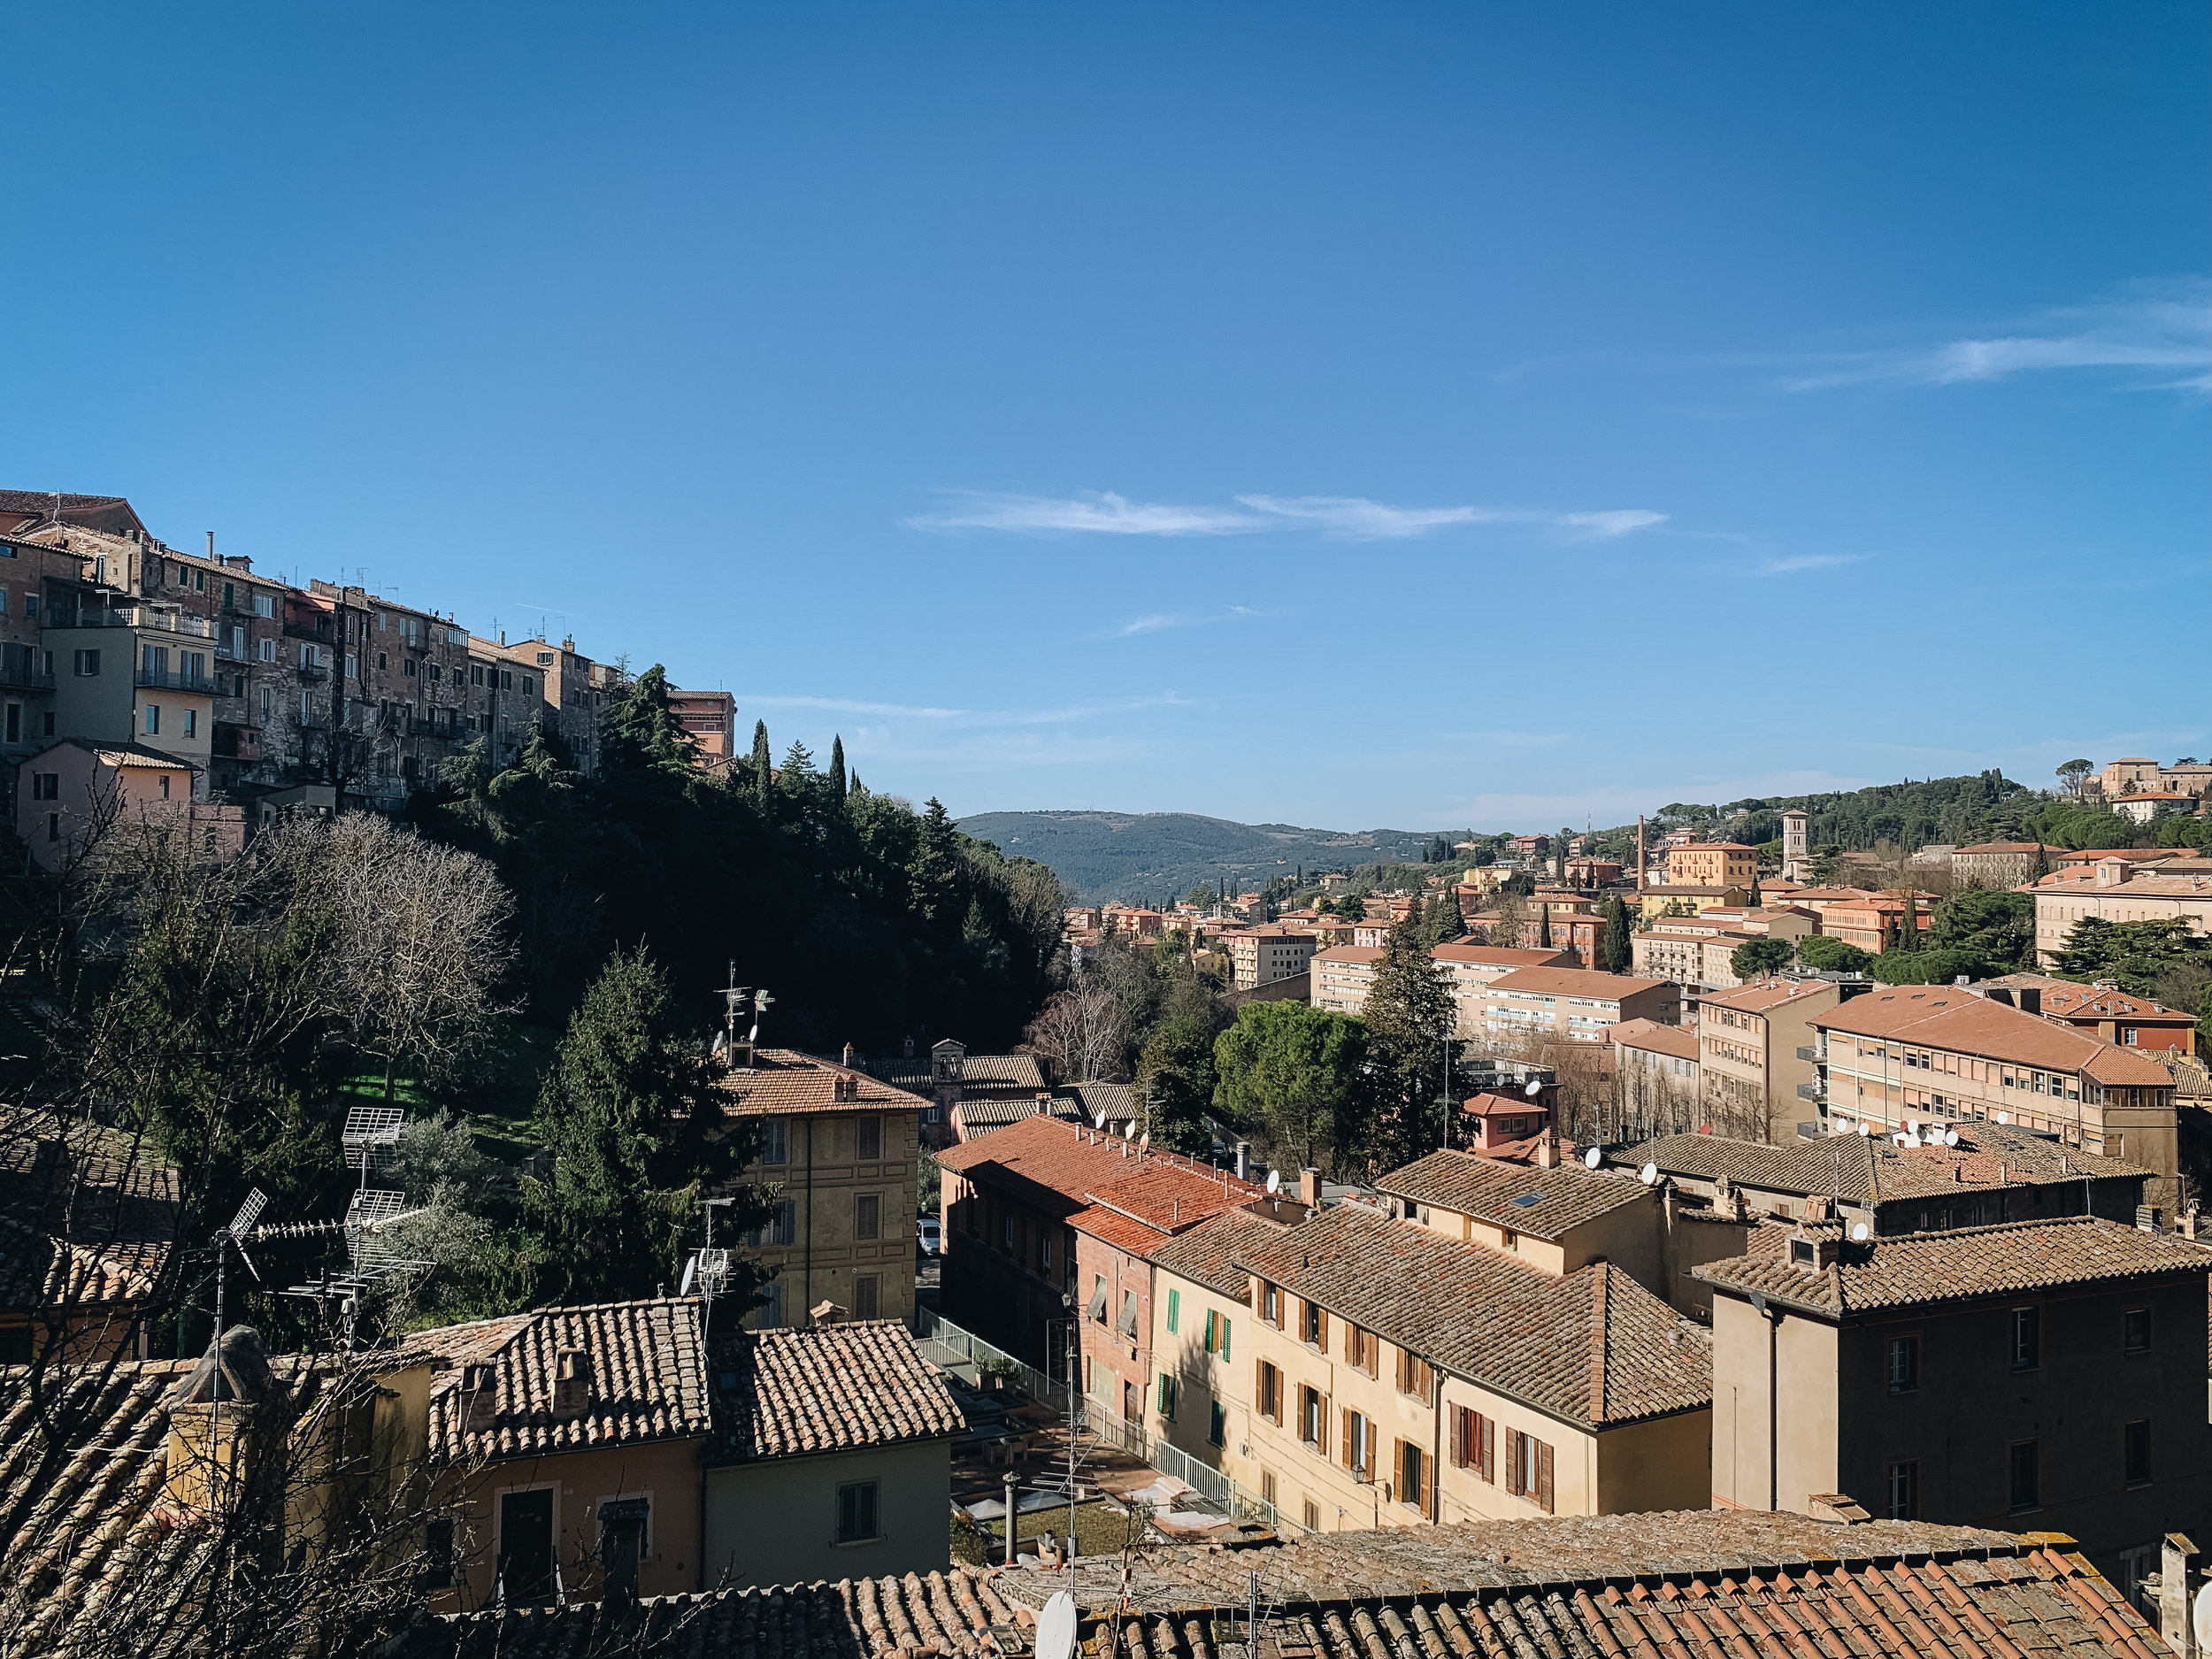 View from the Università per i Stranieri